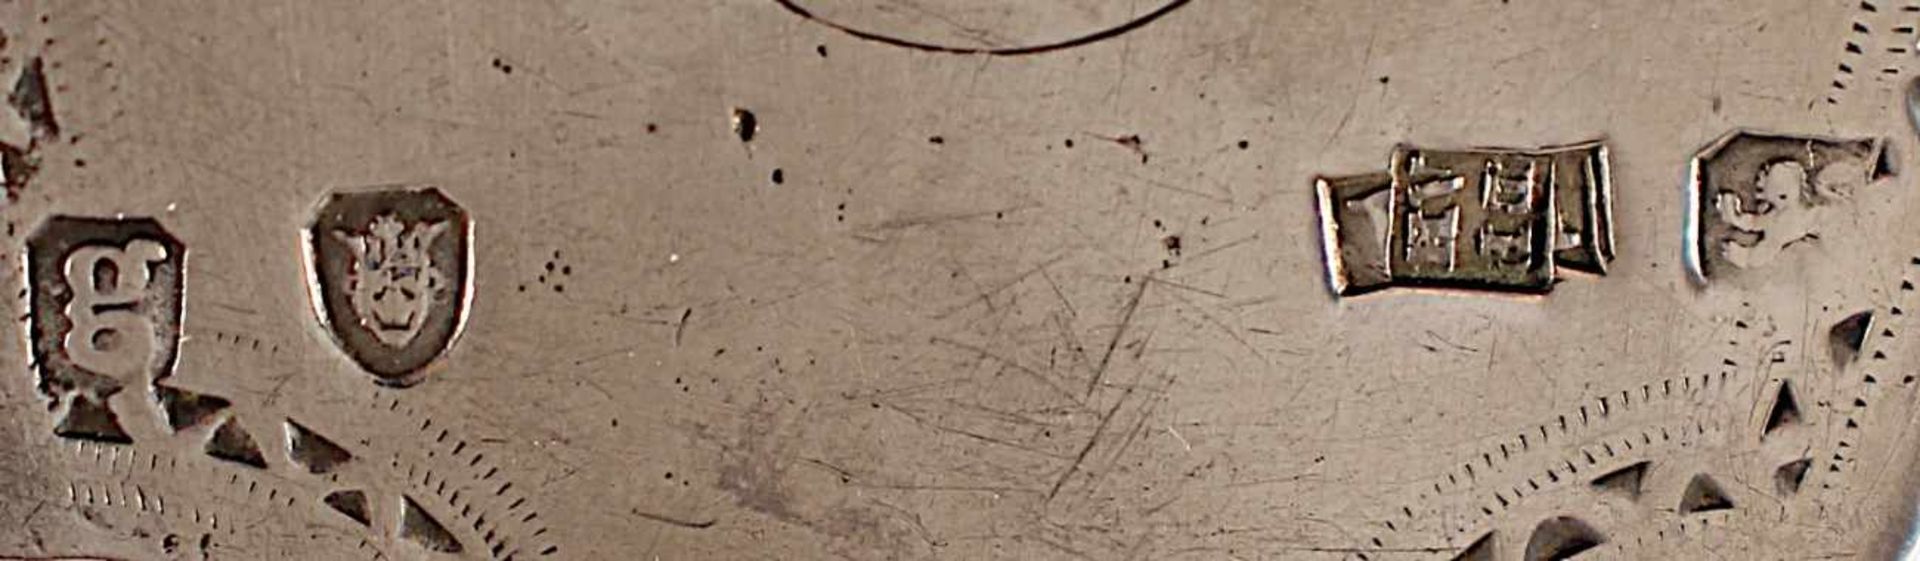 HEBER, 925/ooo, fein gesägte und gravierte Schaufel, Griff mit Perlband und Gravurdekor, L 32,5, - Image 2 of 2